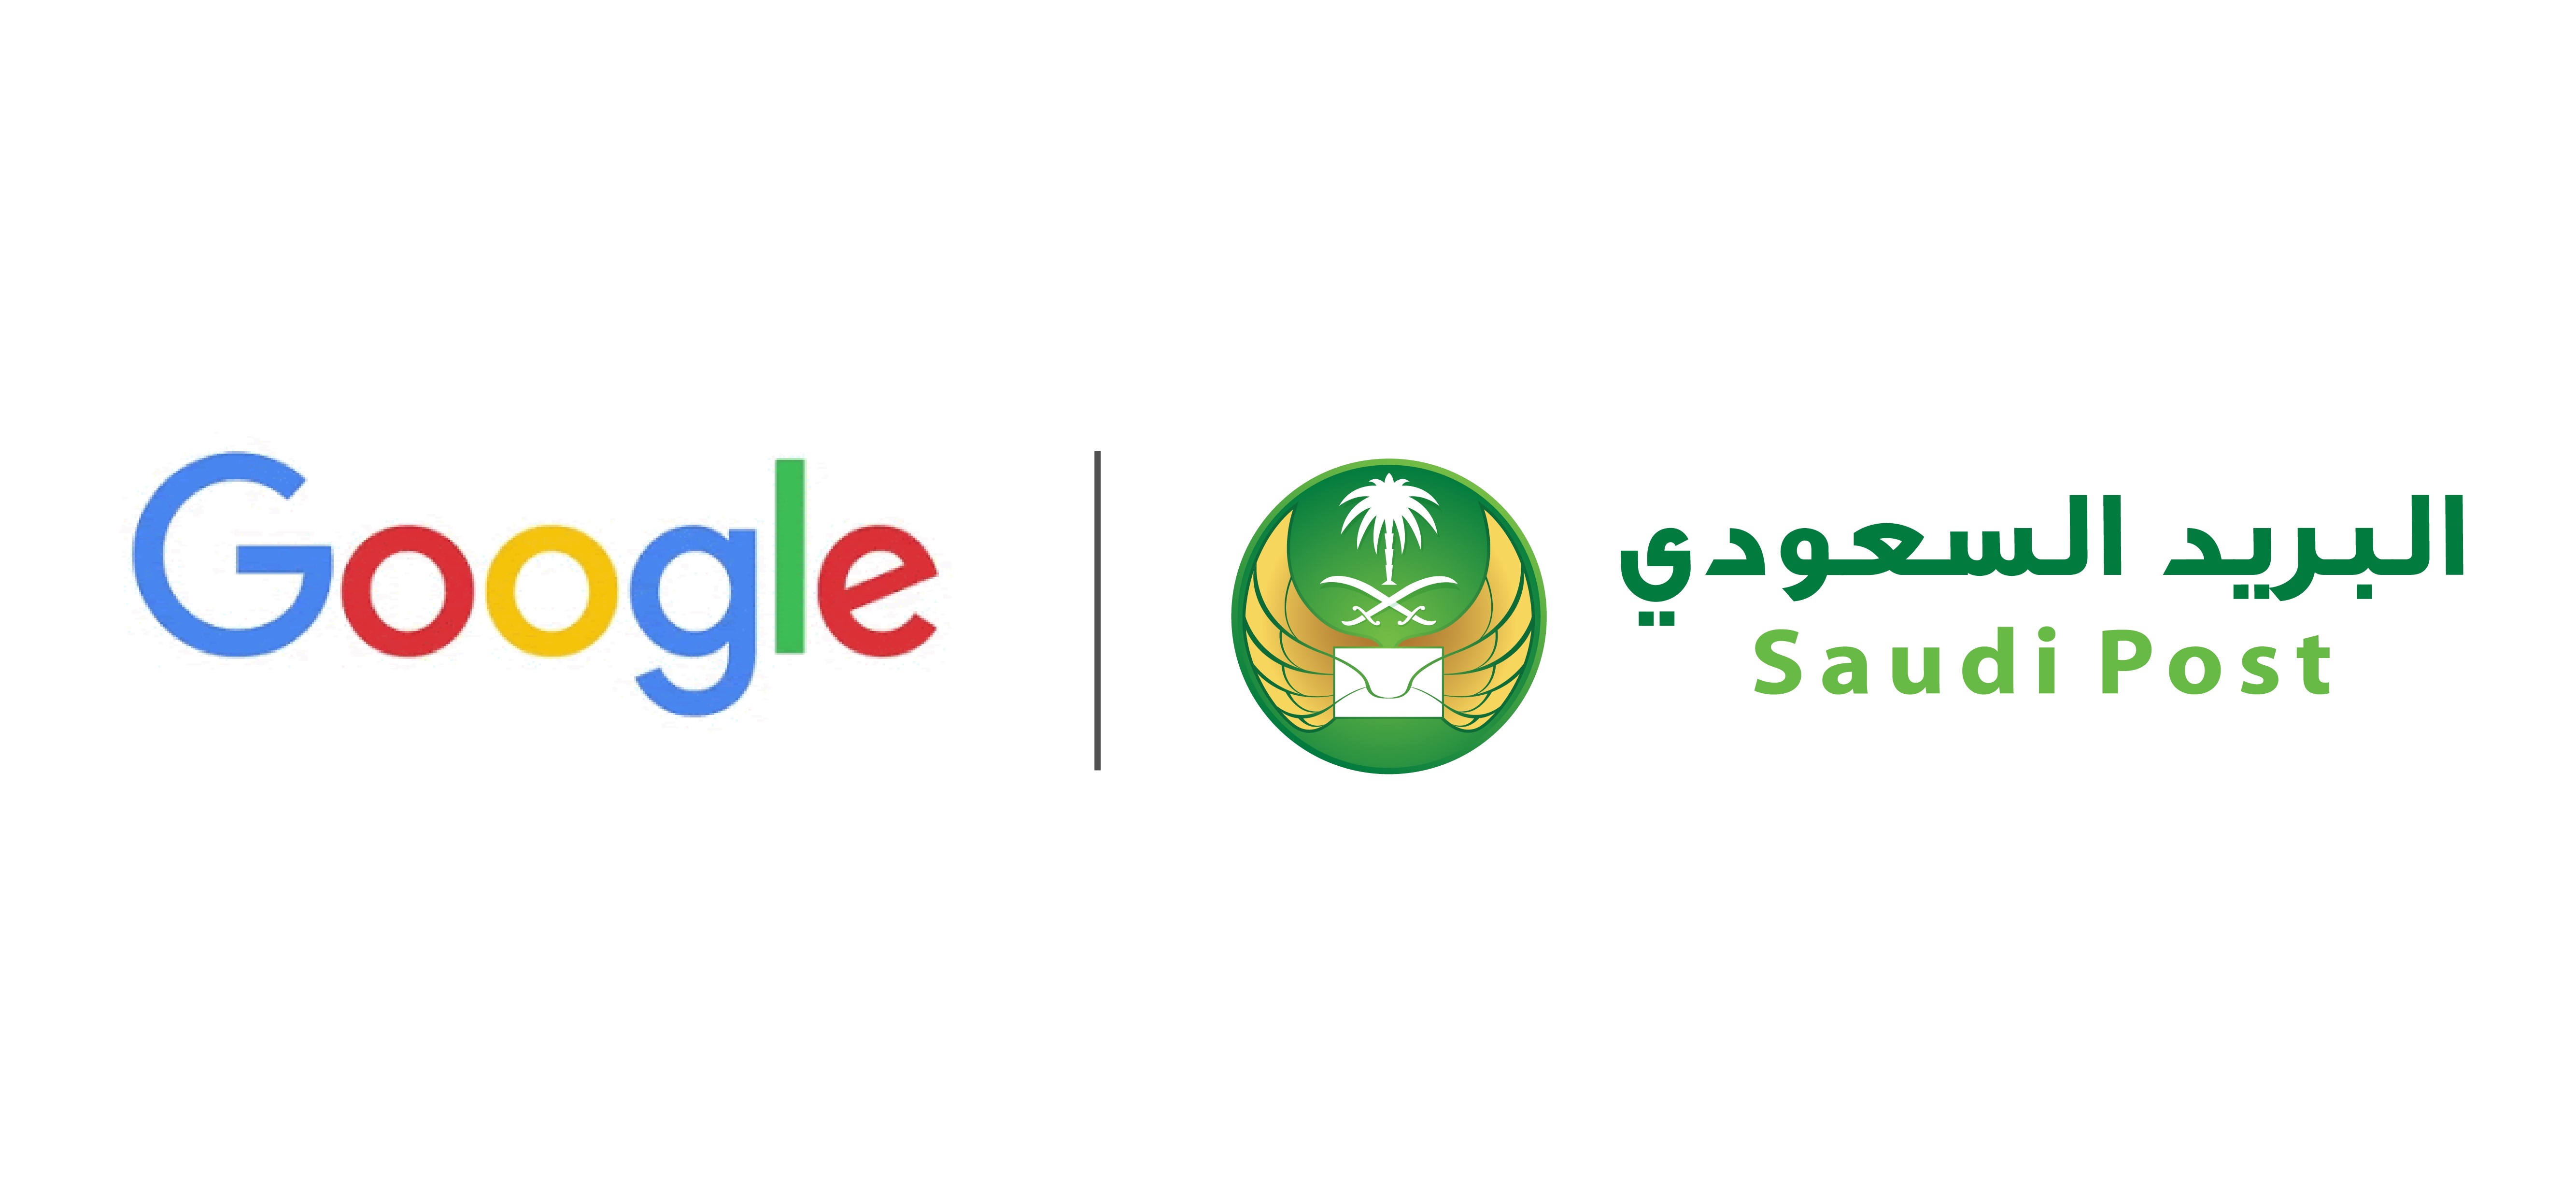 البريد السعودي وجوجل يطلقان  خدمة "الناشر التجاري" لأول مرة في الشرق الأوسط 